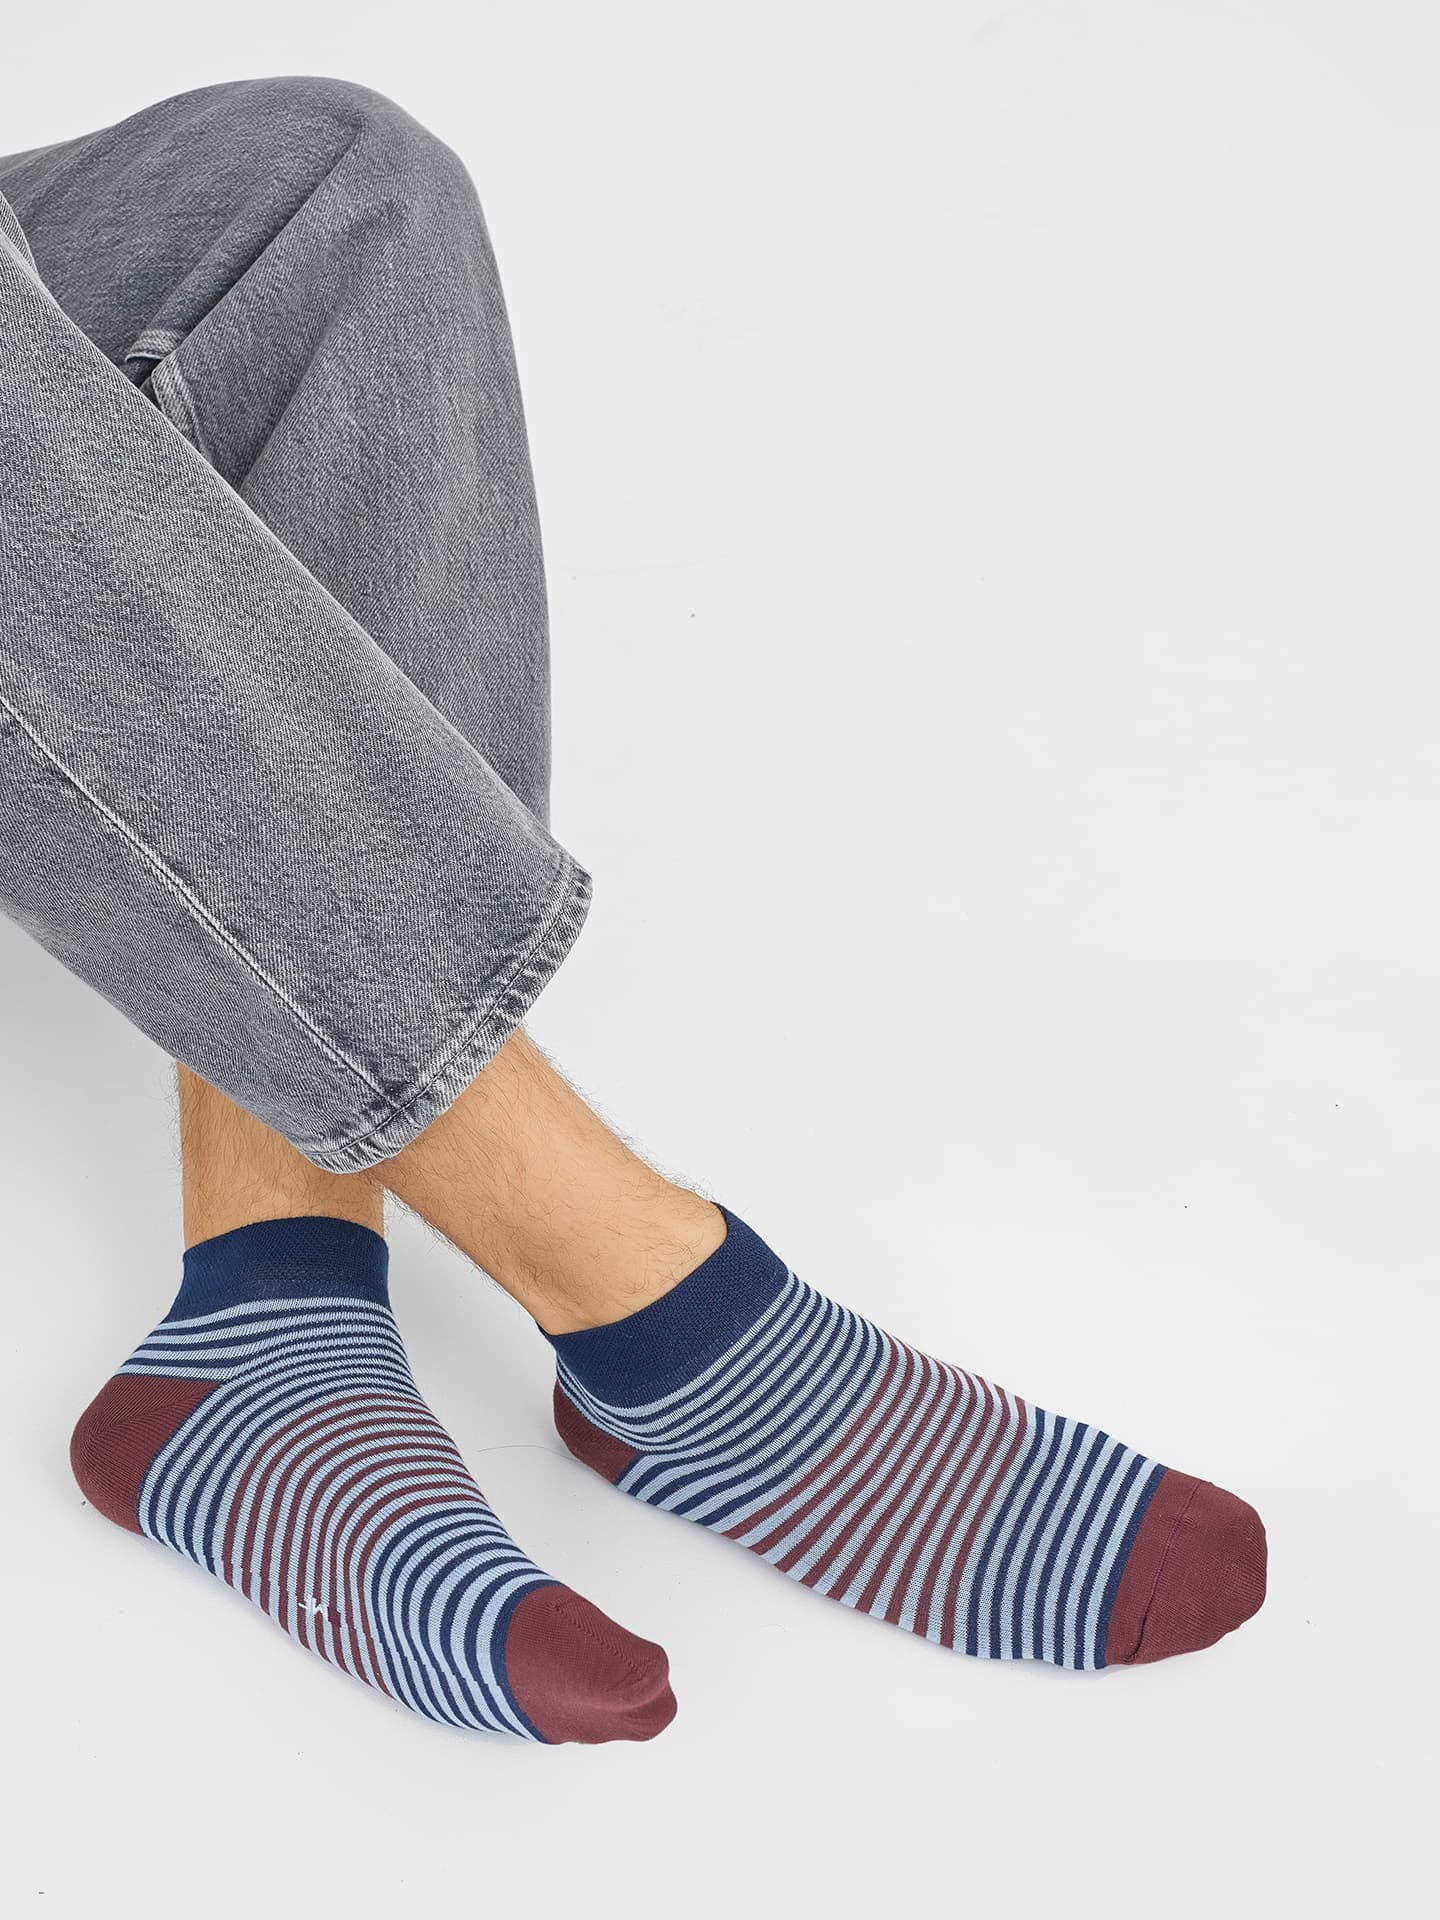 Укороченные мужские носки в полоску с бордовыми и синими элементами